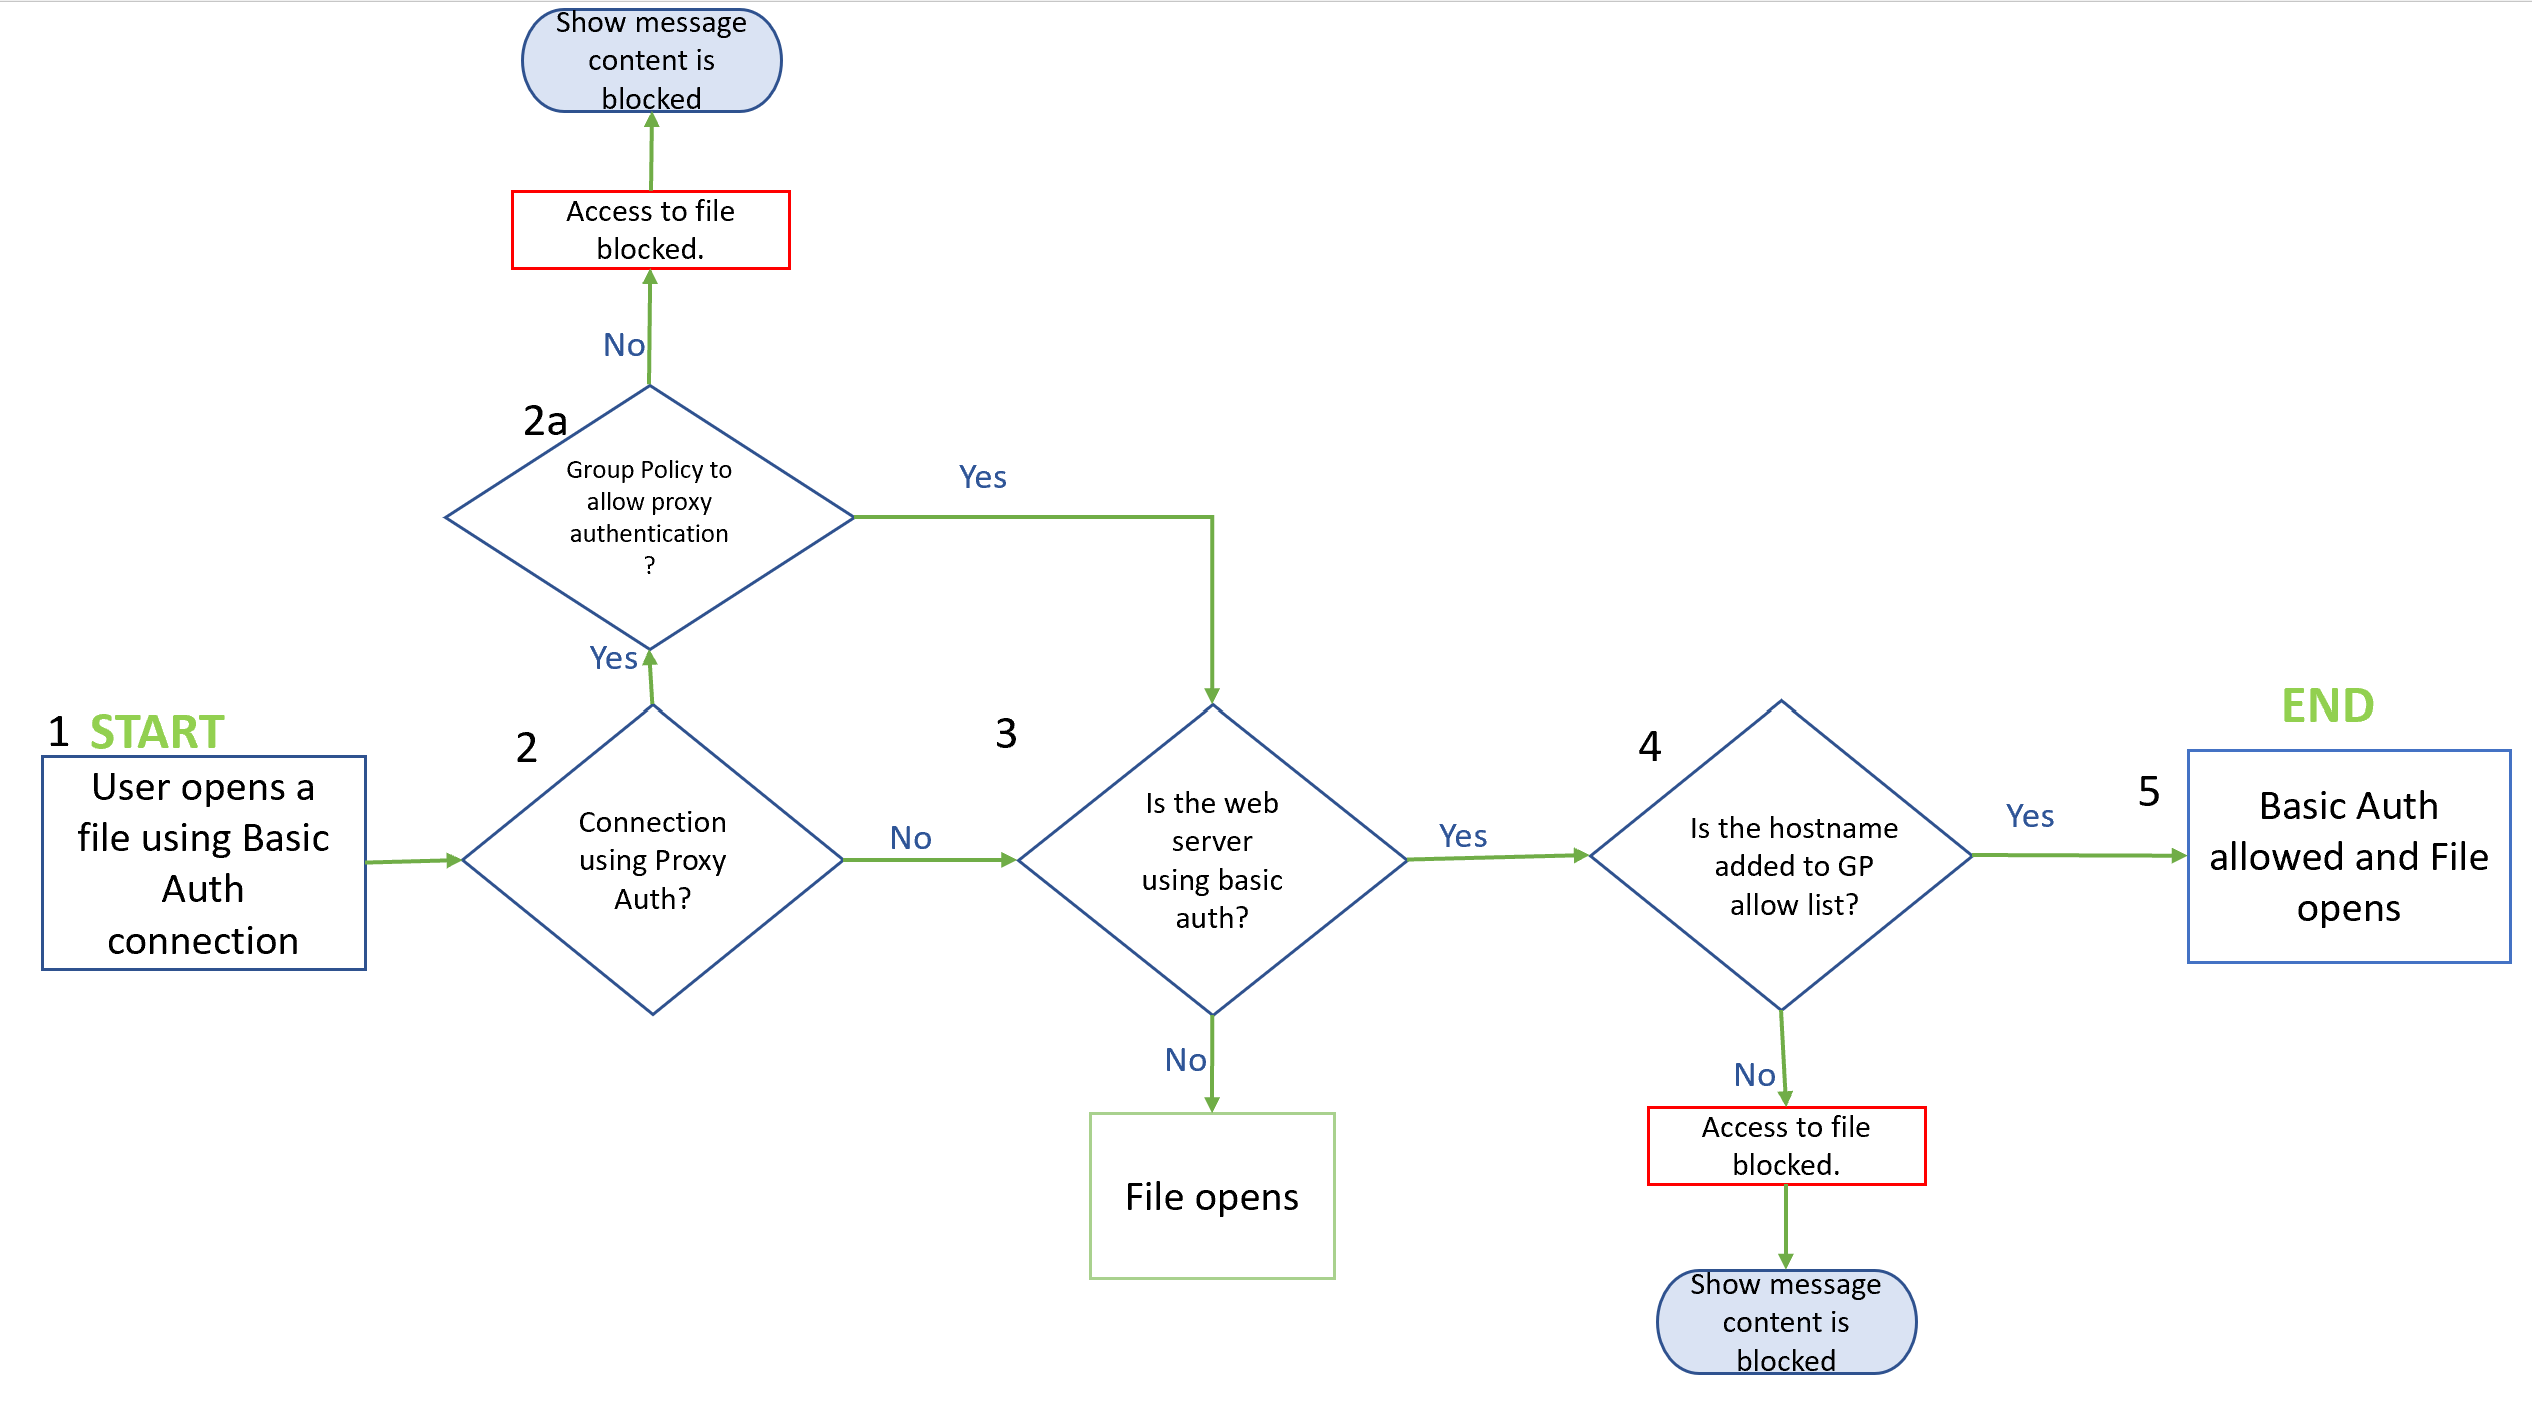 Screenshot eines Flussdiagramms, das die Schritte und Bedingungen für den Zugriff auf eine Datei über eine Standardauthentifizierungsverbindung veranschaulicht, einschließlich der Bedingungen für das Blockieren oder Zulassen des Zugriffs.